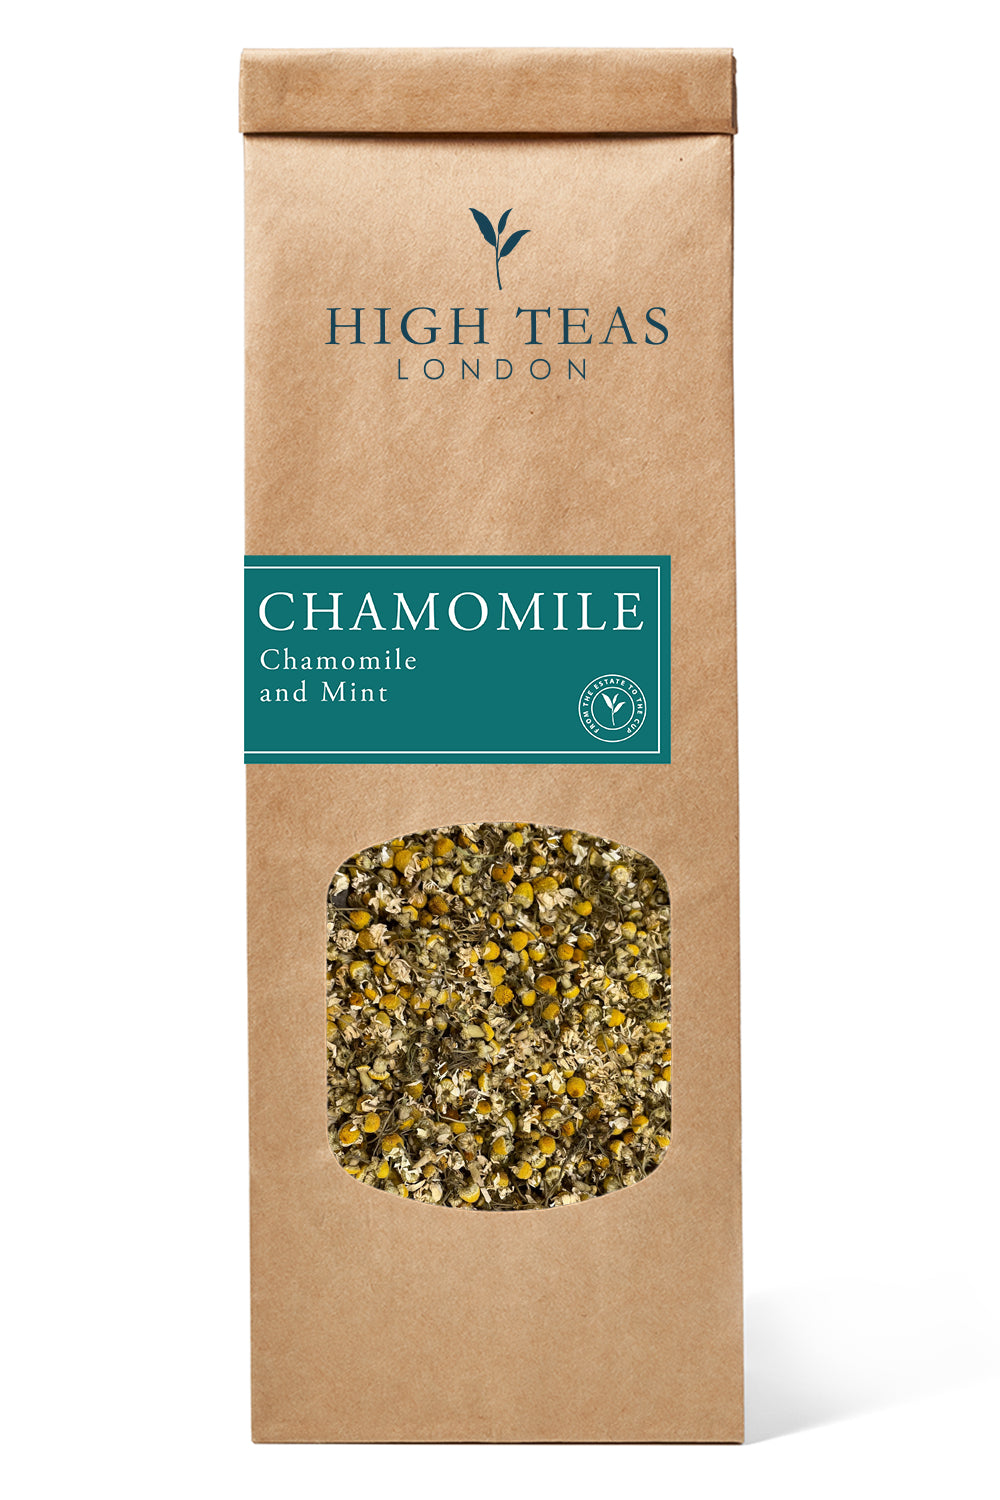 Chamomile and Mint-50g-Loose Leaf Tea-High Teas